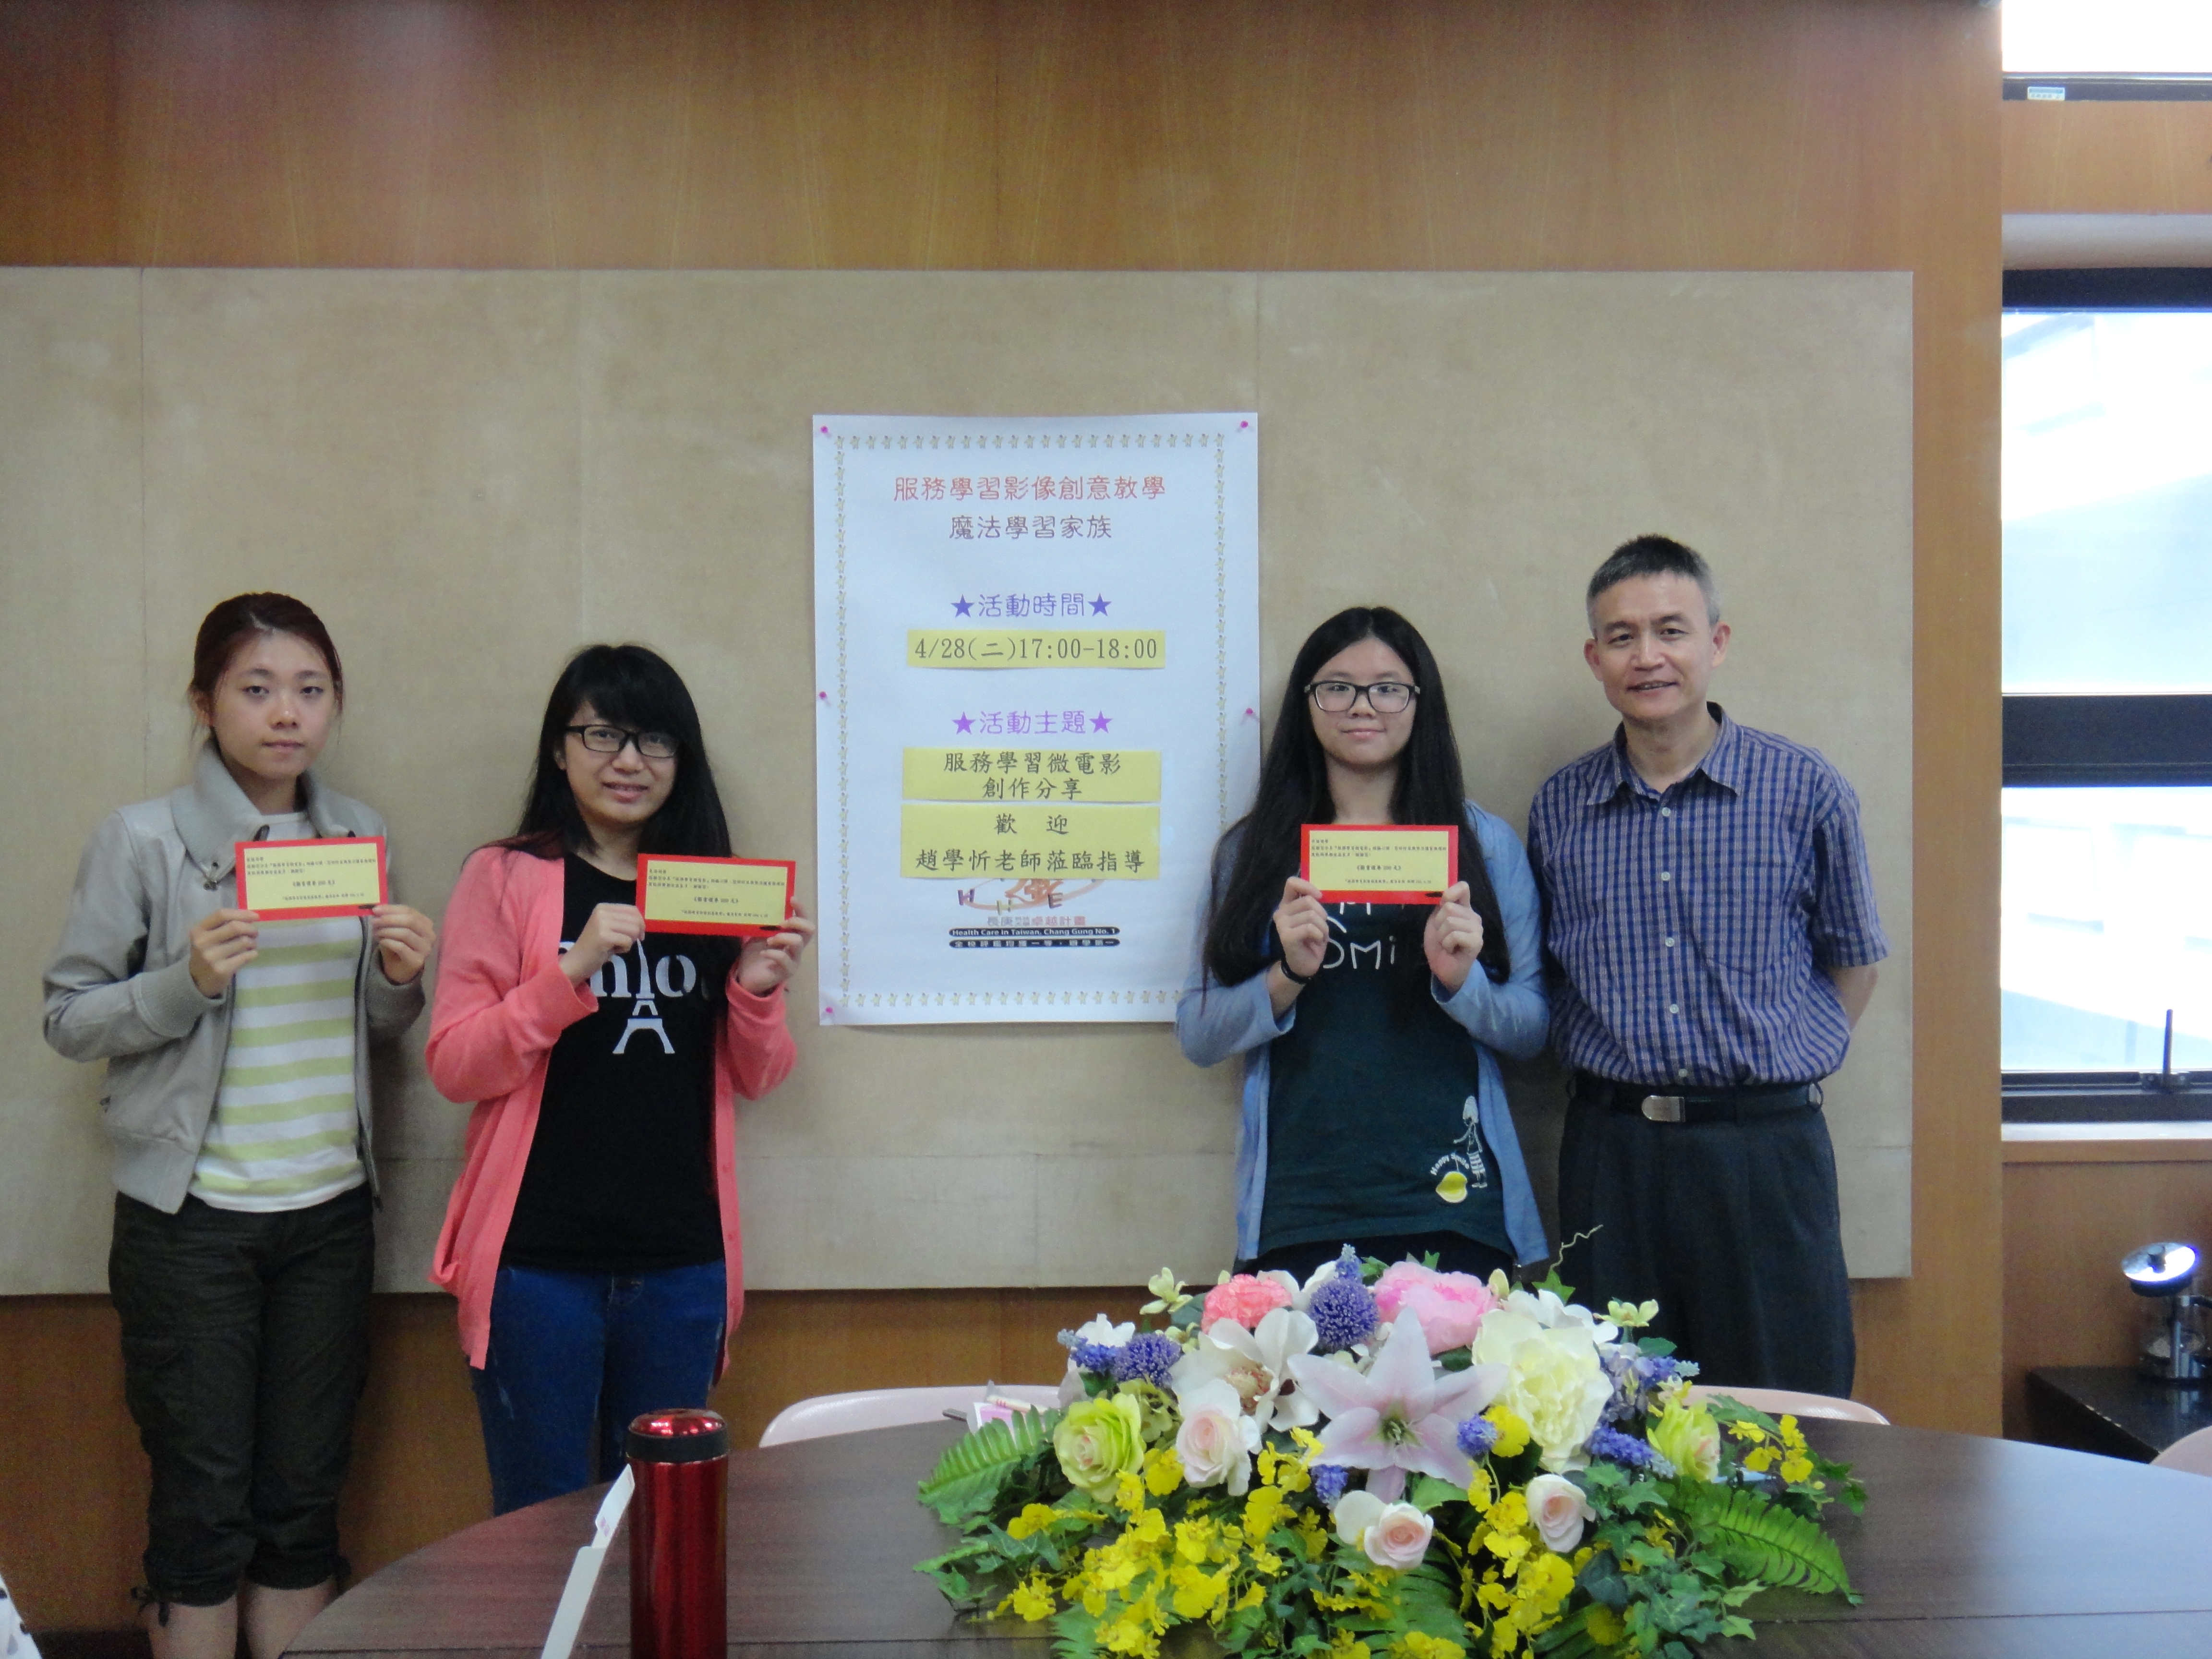 04/28指導老師頒獎表揚拍攝微電影的家族成員